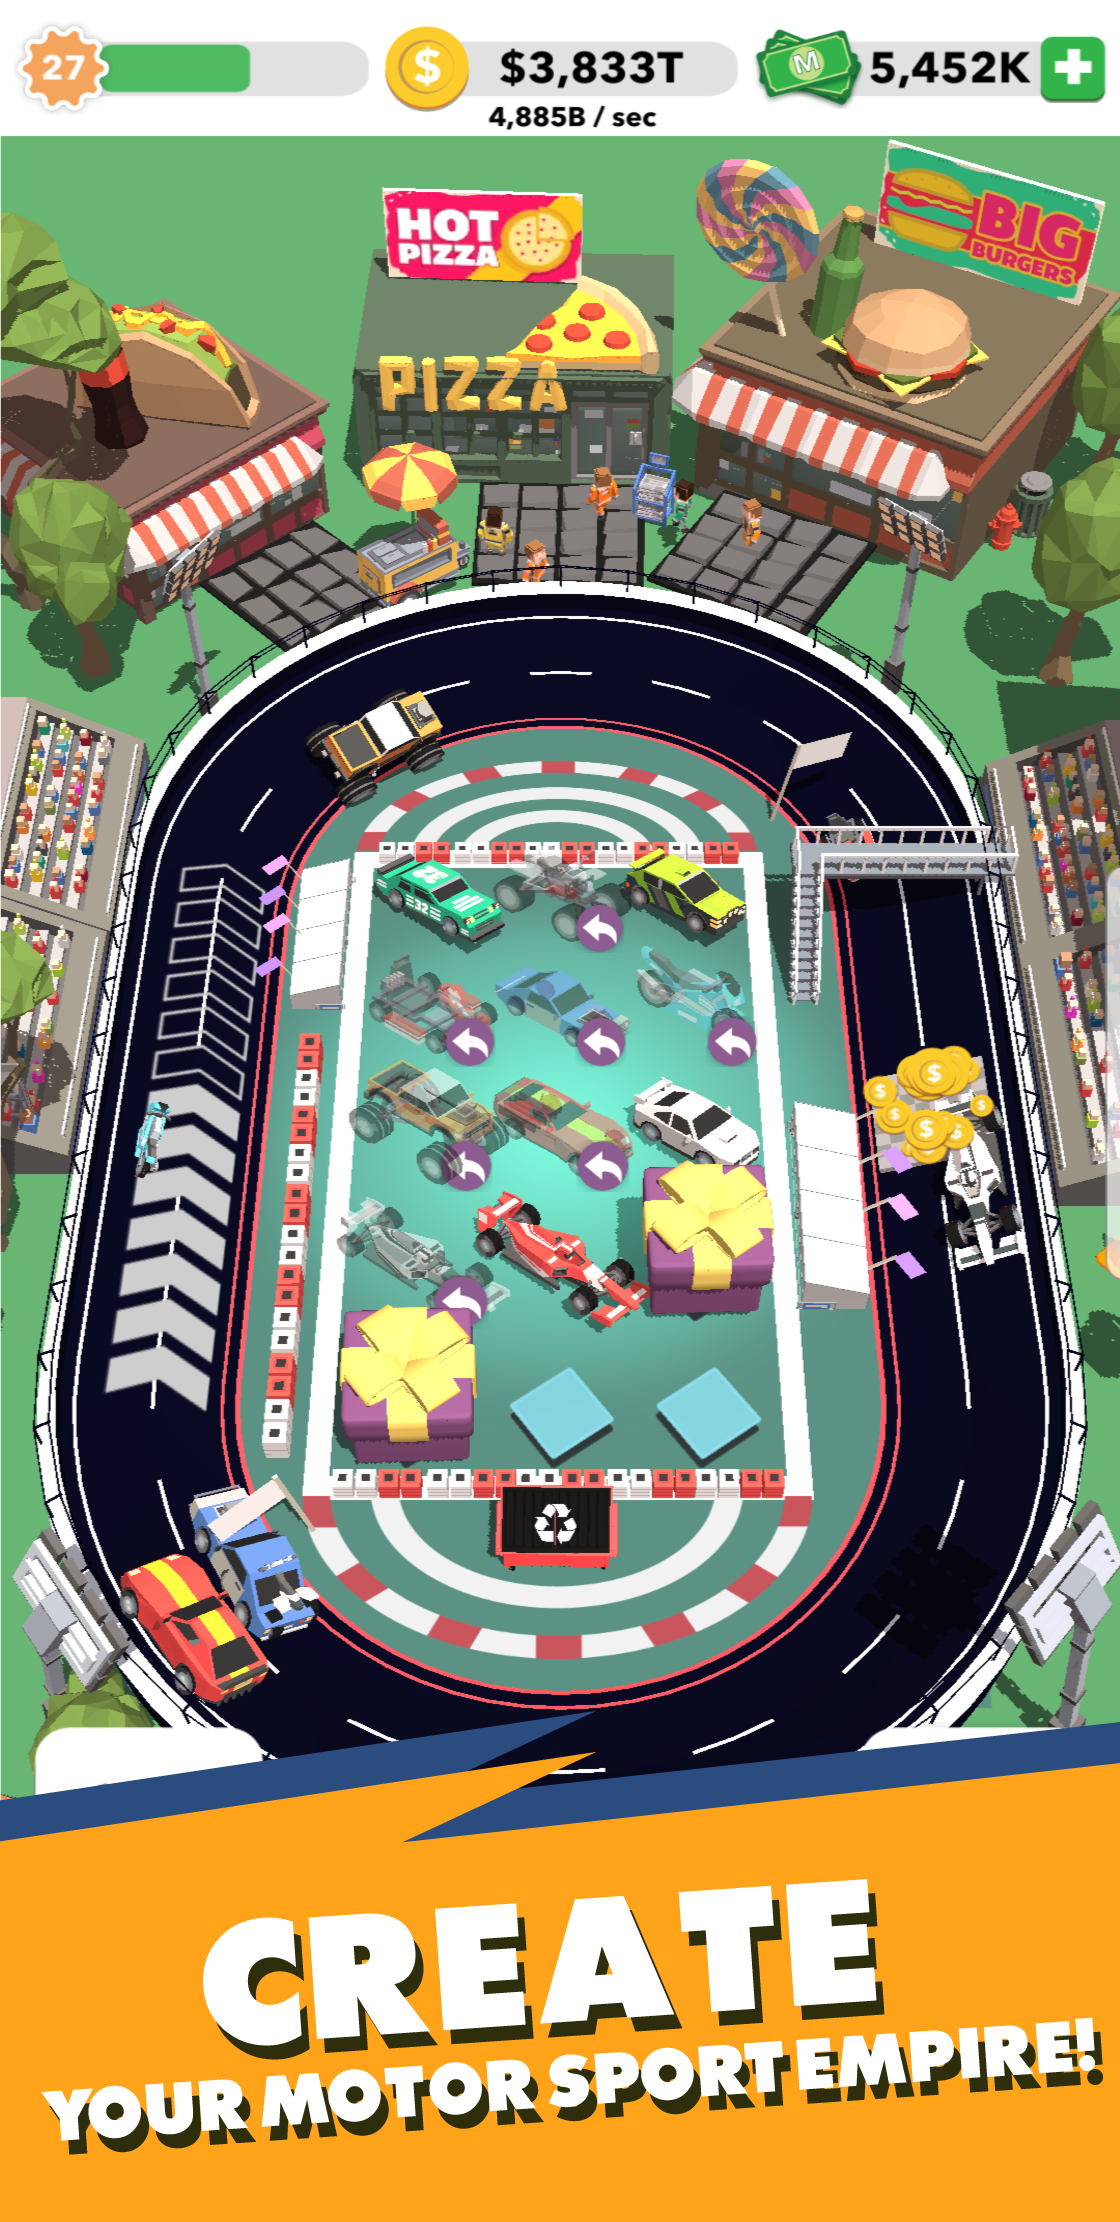 Merge Cars 3D screenshot game